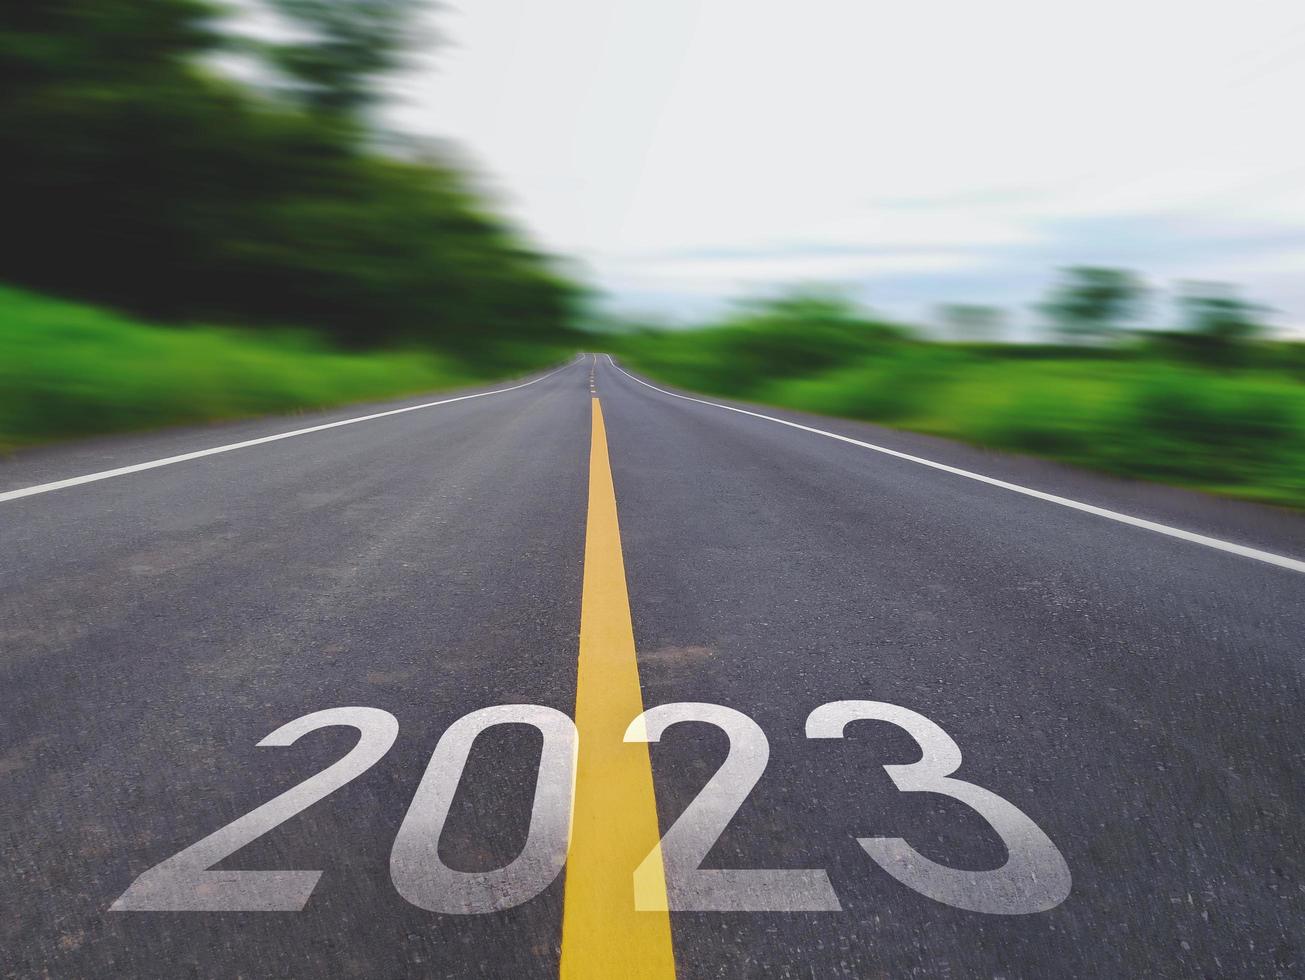 konzept des neuen jahres und der neuen straße mit dem wort 2022 bis 2023 geschrieben auf der asphaltstraße in einer schönen landstraße mit grünen rasenfeldern auf beiden seiten konzept für das neue jahr oder die vision von 2023 foto